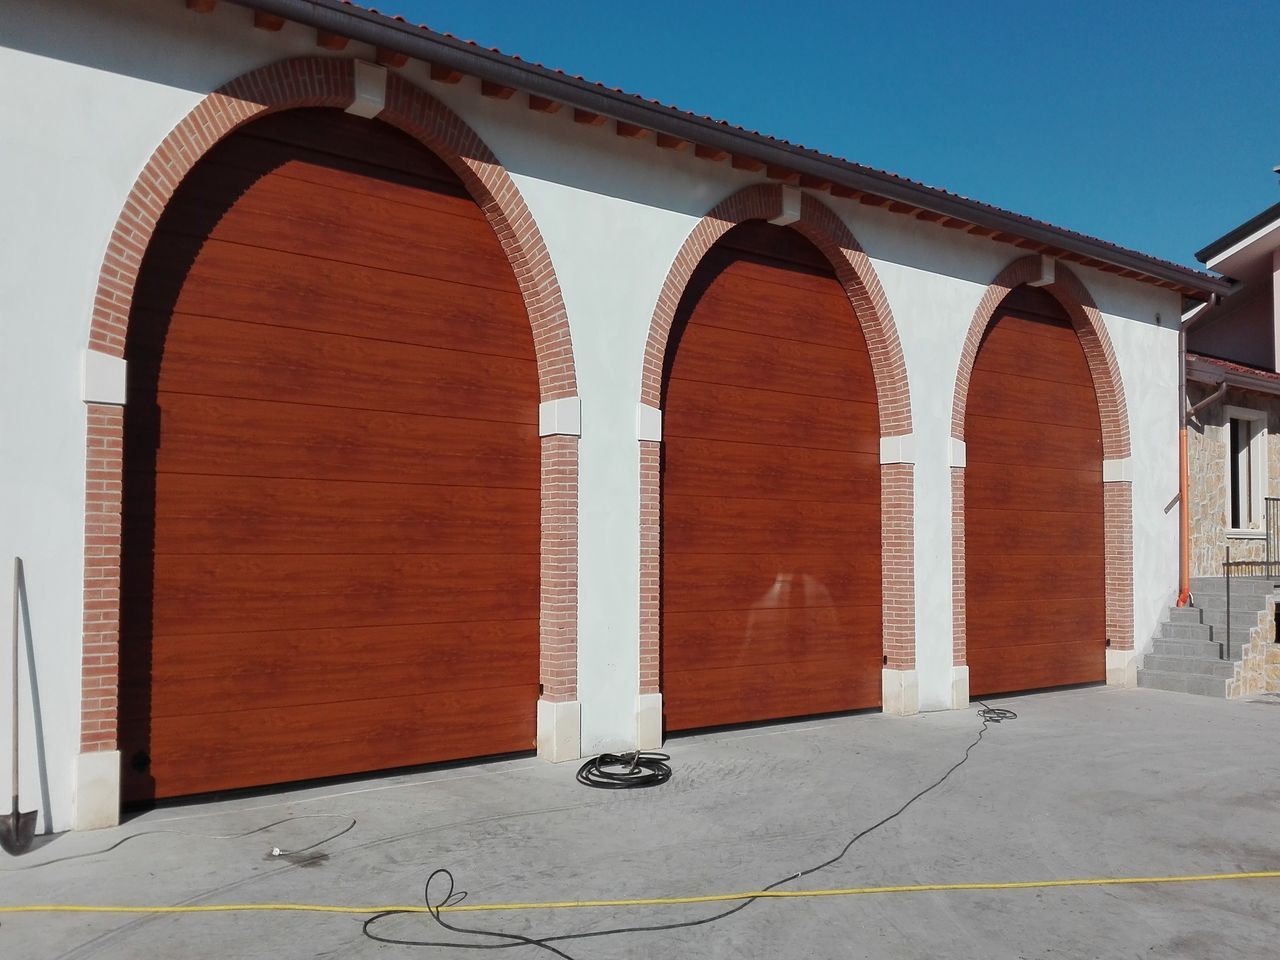 Porte sezionali Simil legno e Corten  Mantova, Modena, Reggio Emilia, Verona